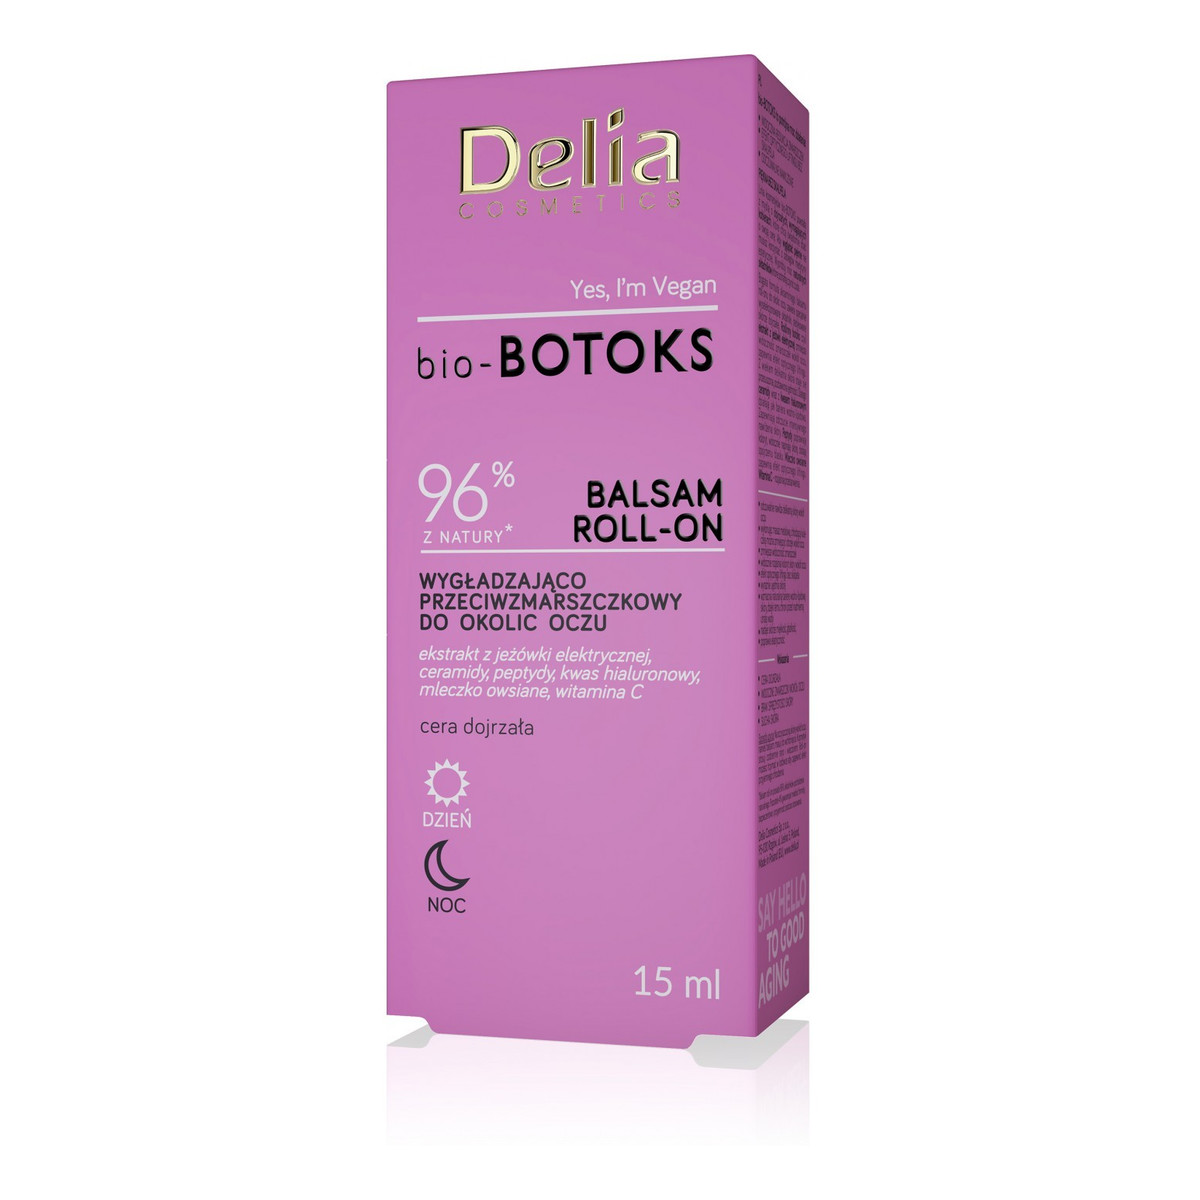 Delia Cosmetics bio-botoks Balsam roll-on wygładzająco przeciwzmarszczkowy do okolic oczu 15ml